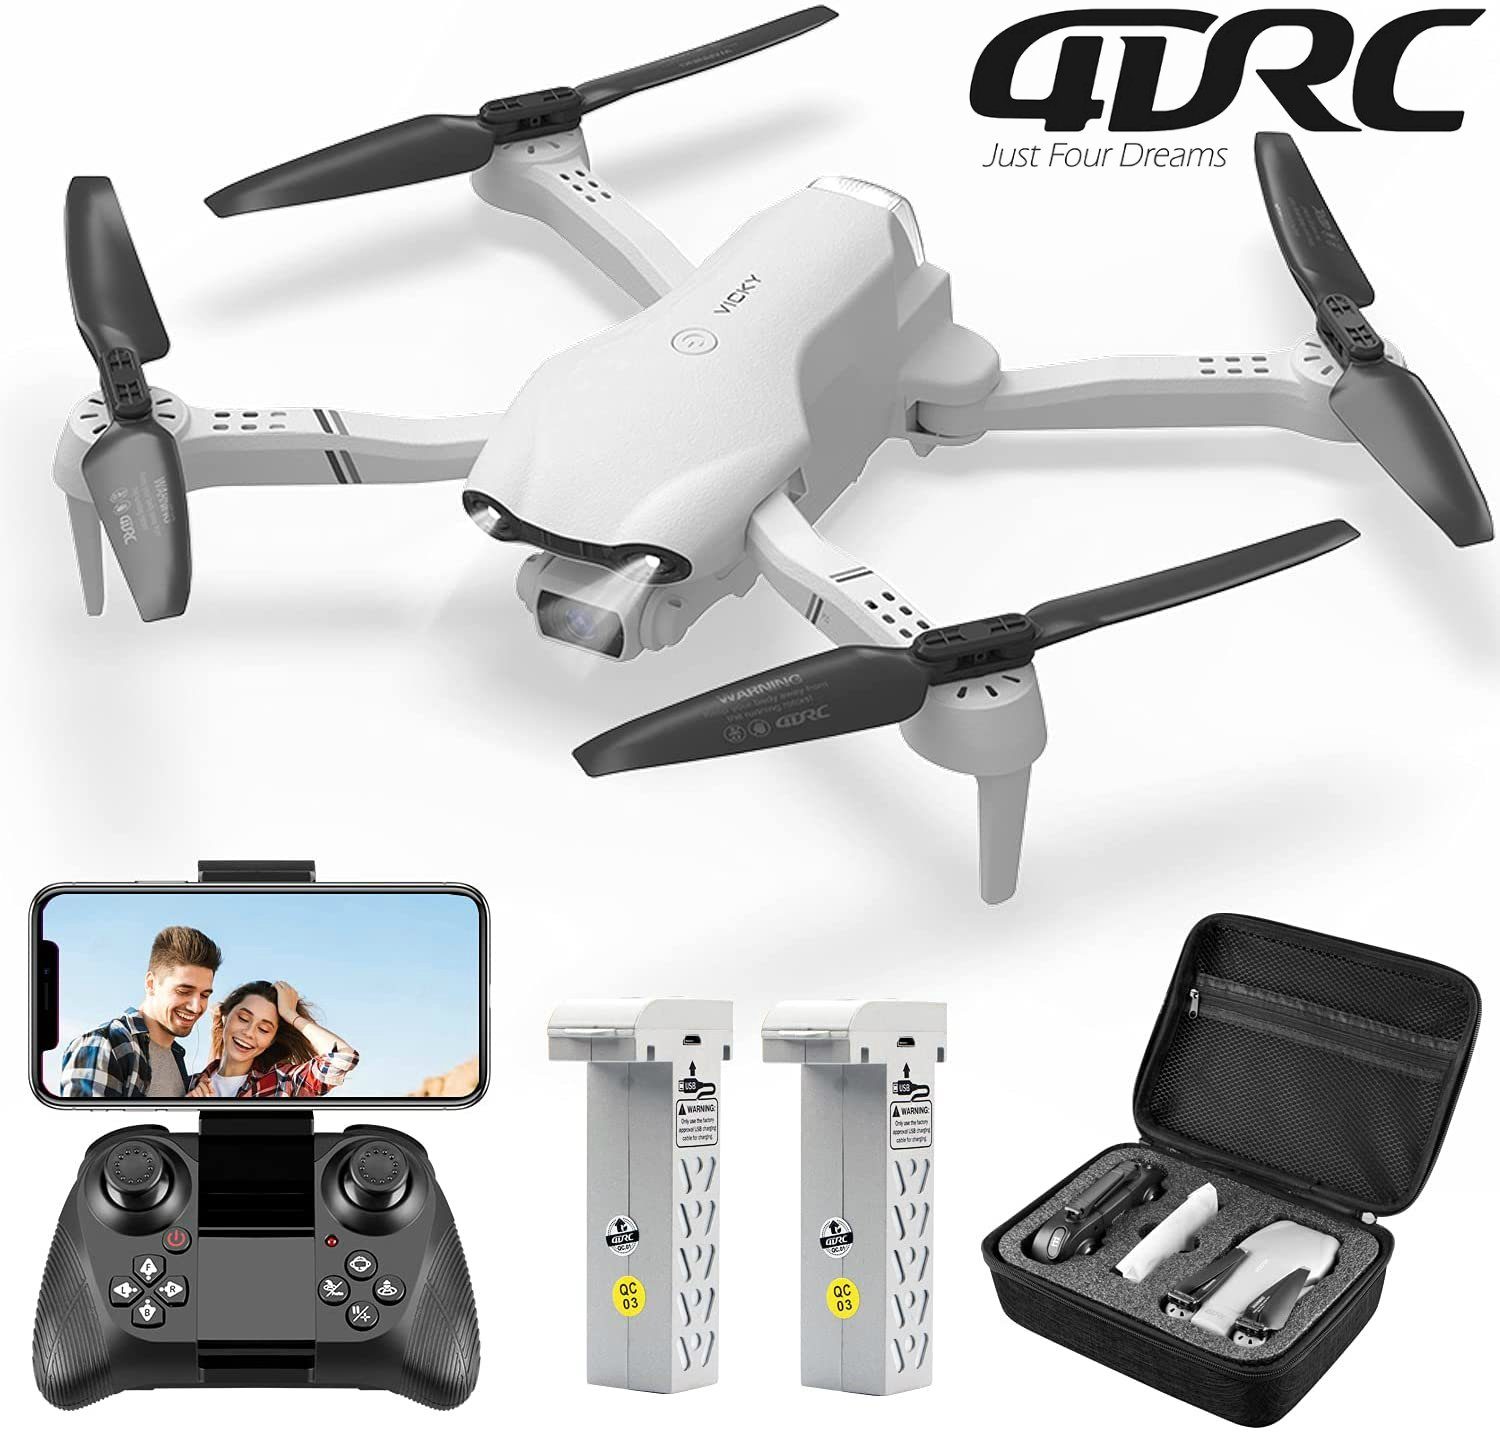 4DRC für Kinder (1080P Quadcopter F10, Anfänger, HD, FPV-Live-Video, automatischer Flugzeit, & Weiß Spielzeug-Drohne klappbarer Minuten 32 Schwebeflug)